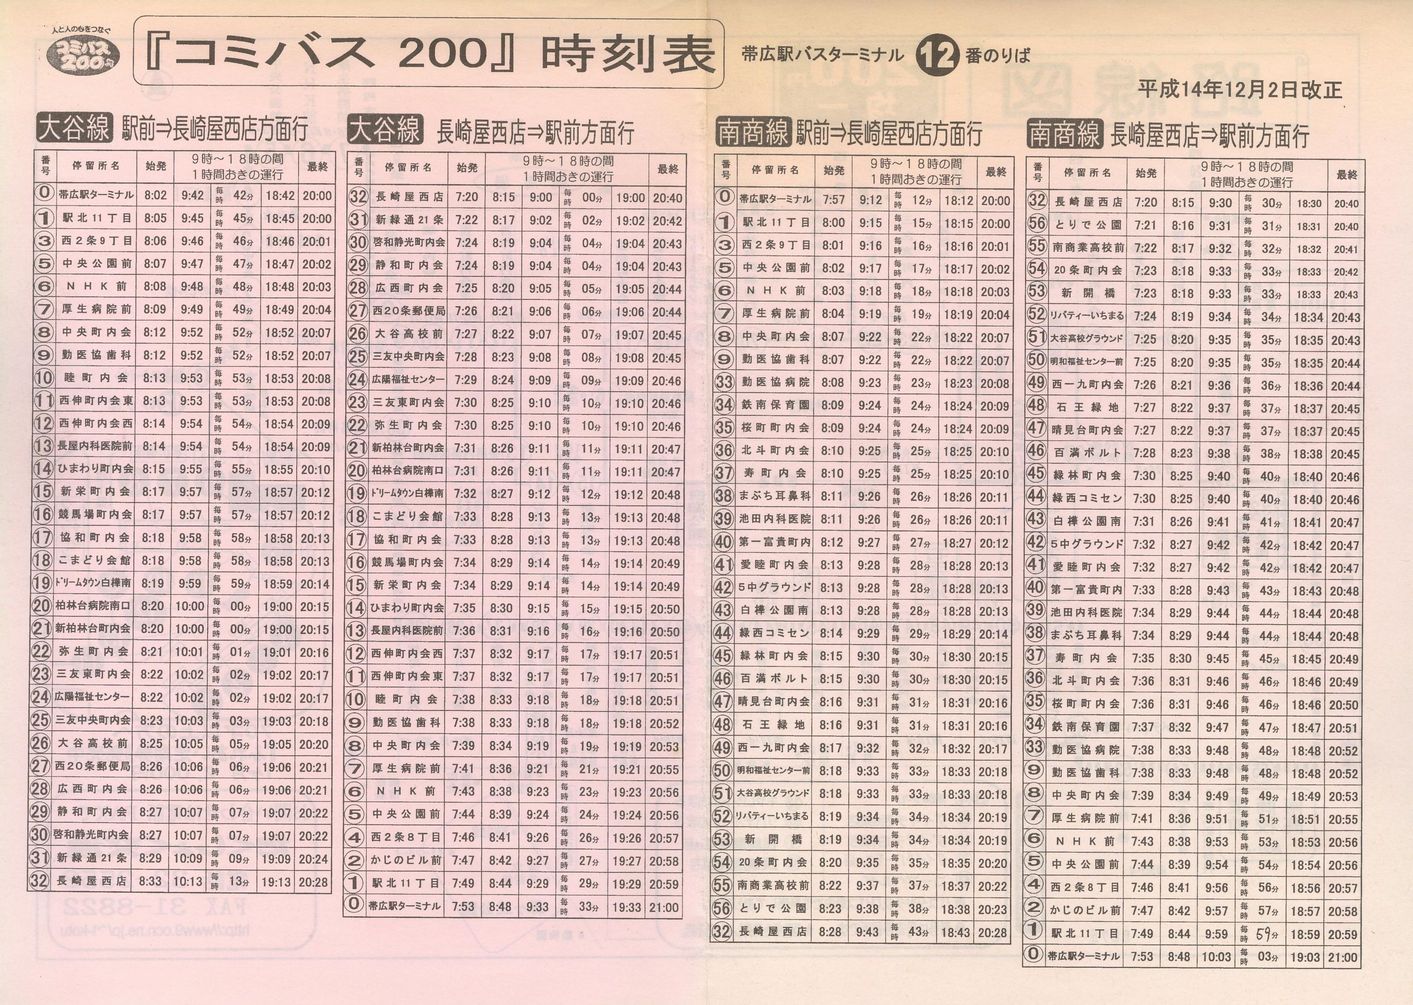 2002-12-02改正_たくしょく交通_コミバス200時刻表表面